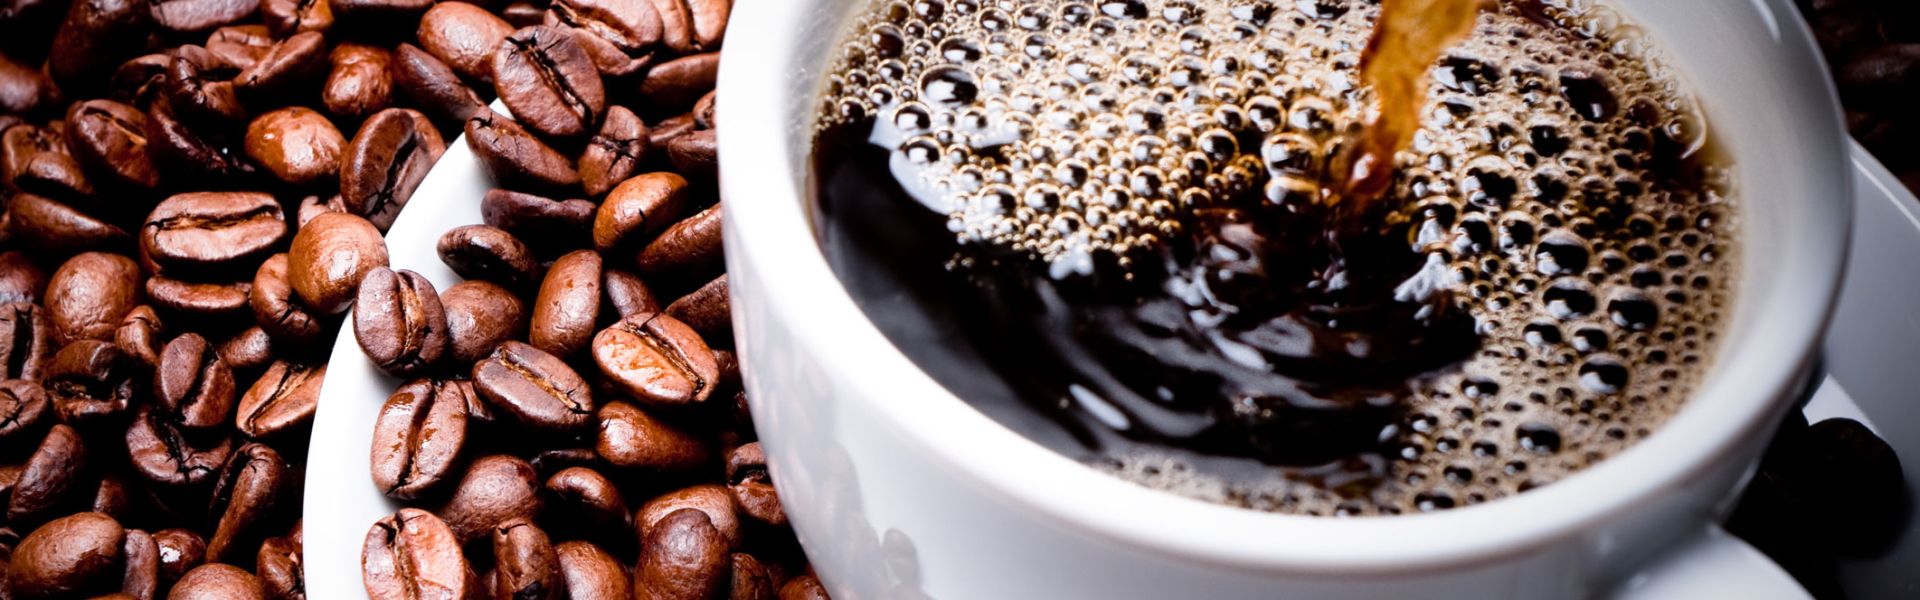 Des solutions pour échapper aux effets négatifs de la caféine